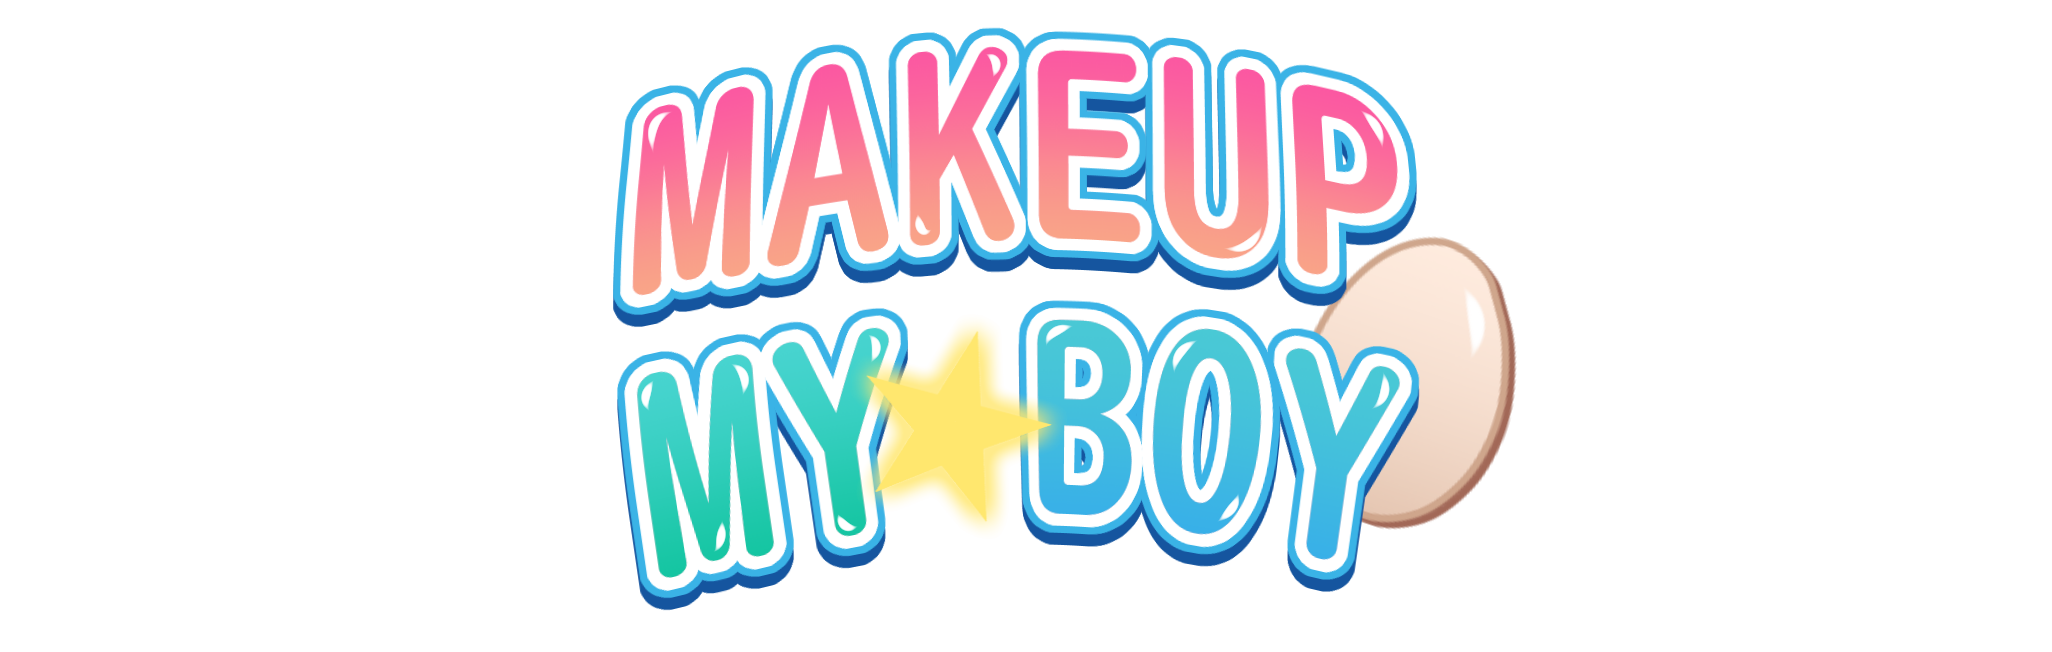 Makeup My Boy